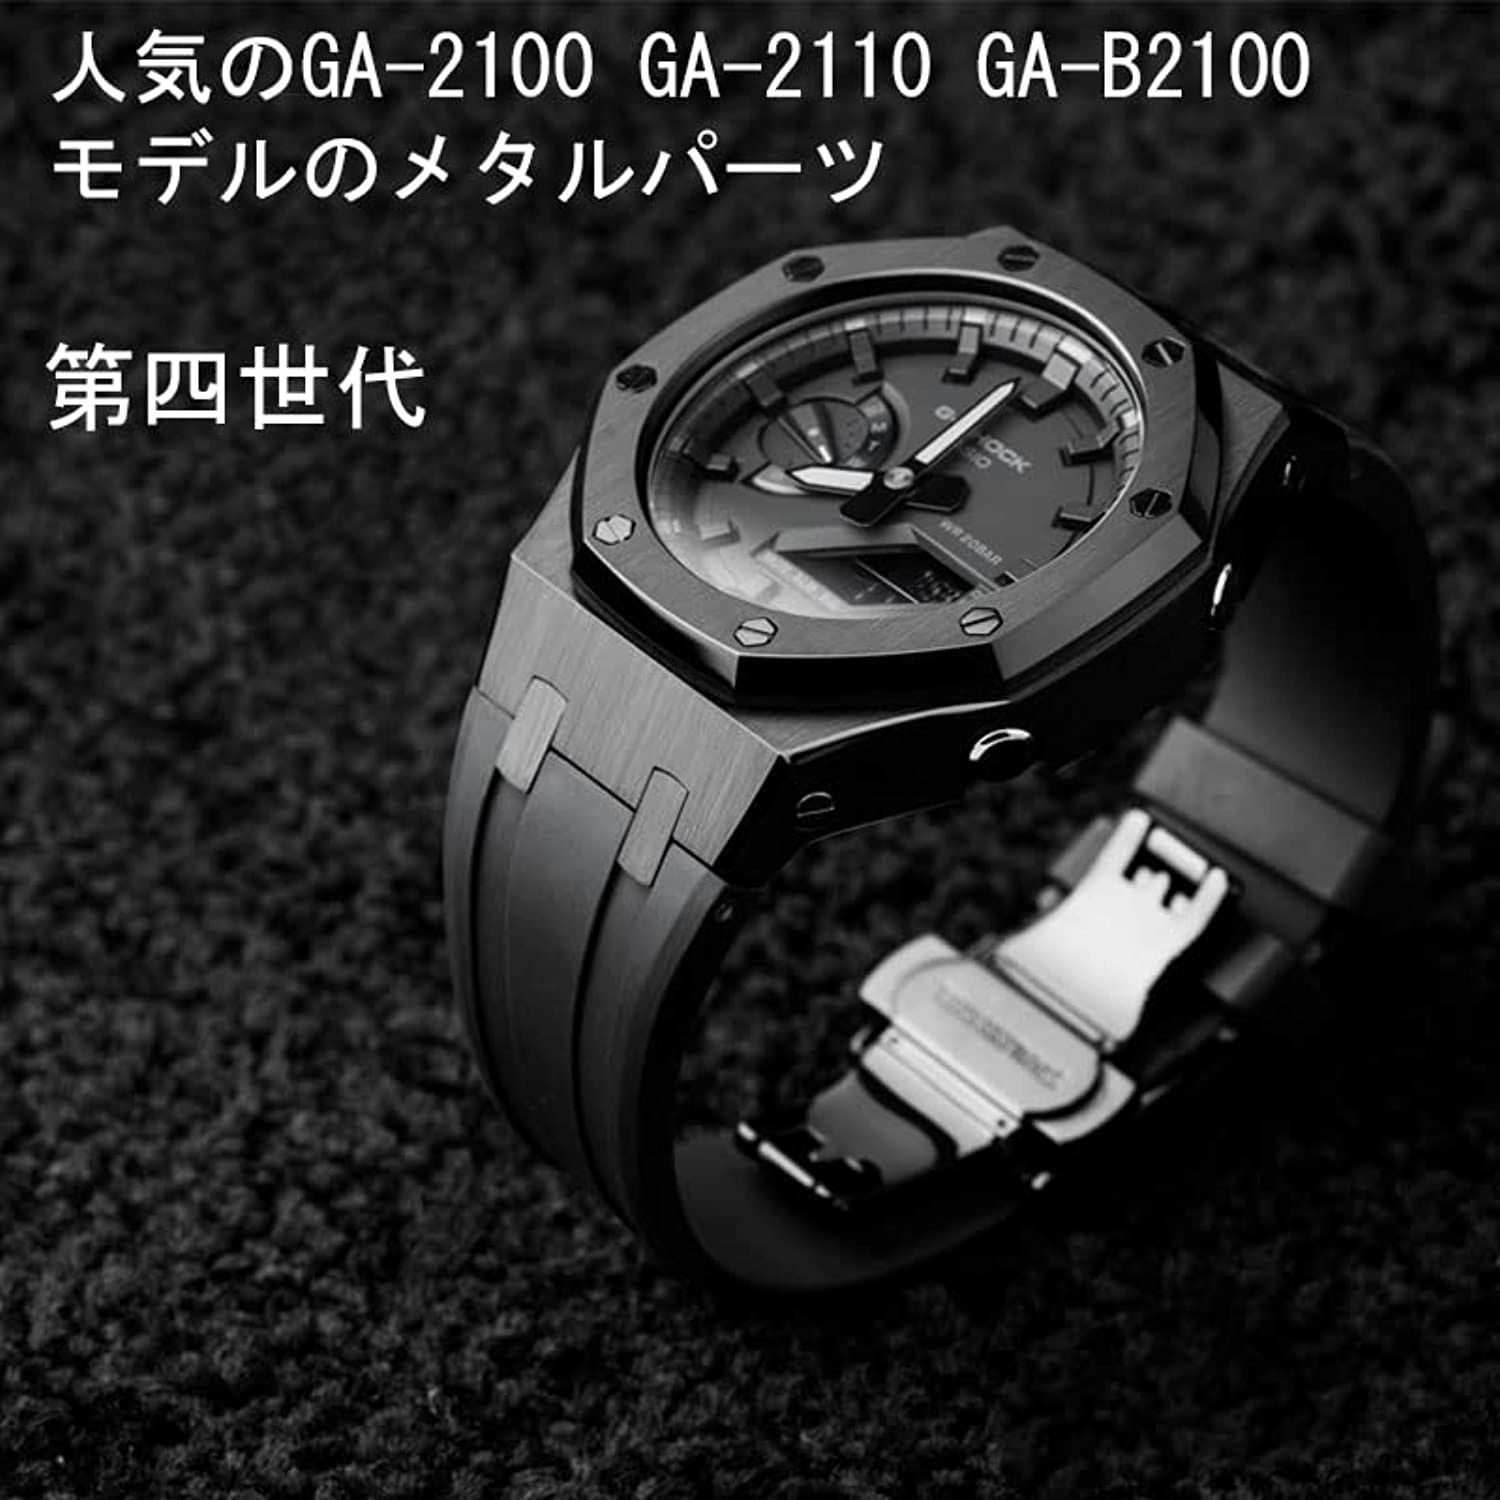 G-SHOCK 第四世代 カシオーク カスタムパーツ ラバーベルト - 腕時計 